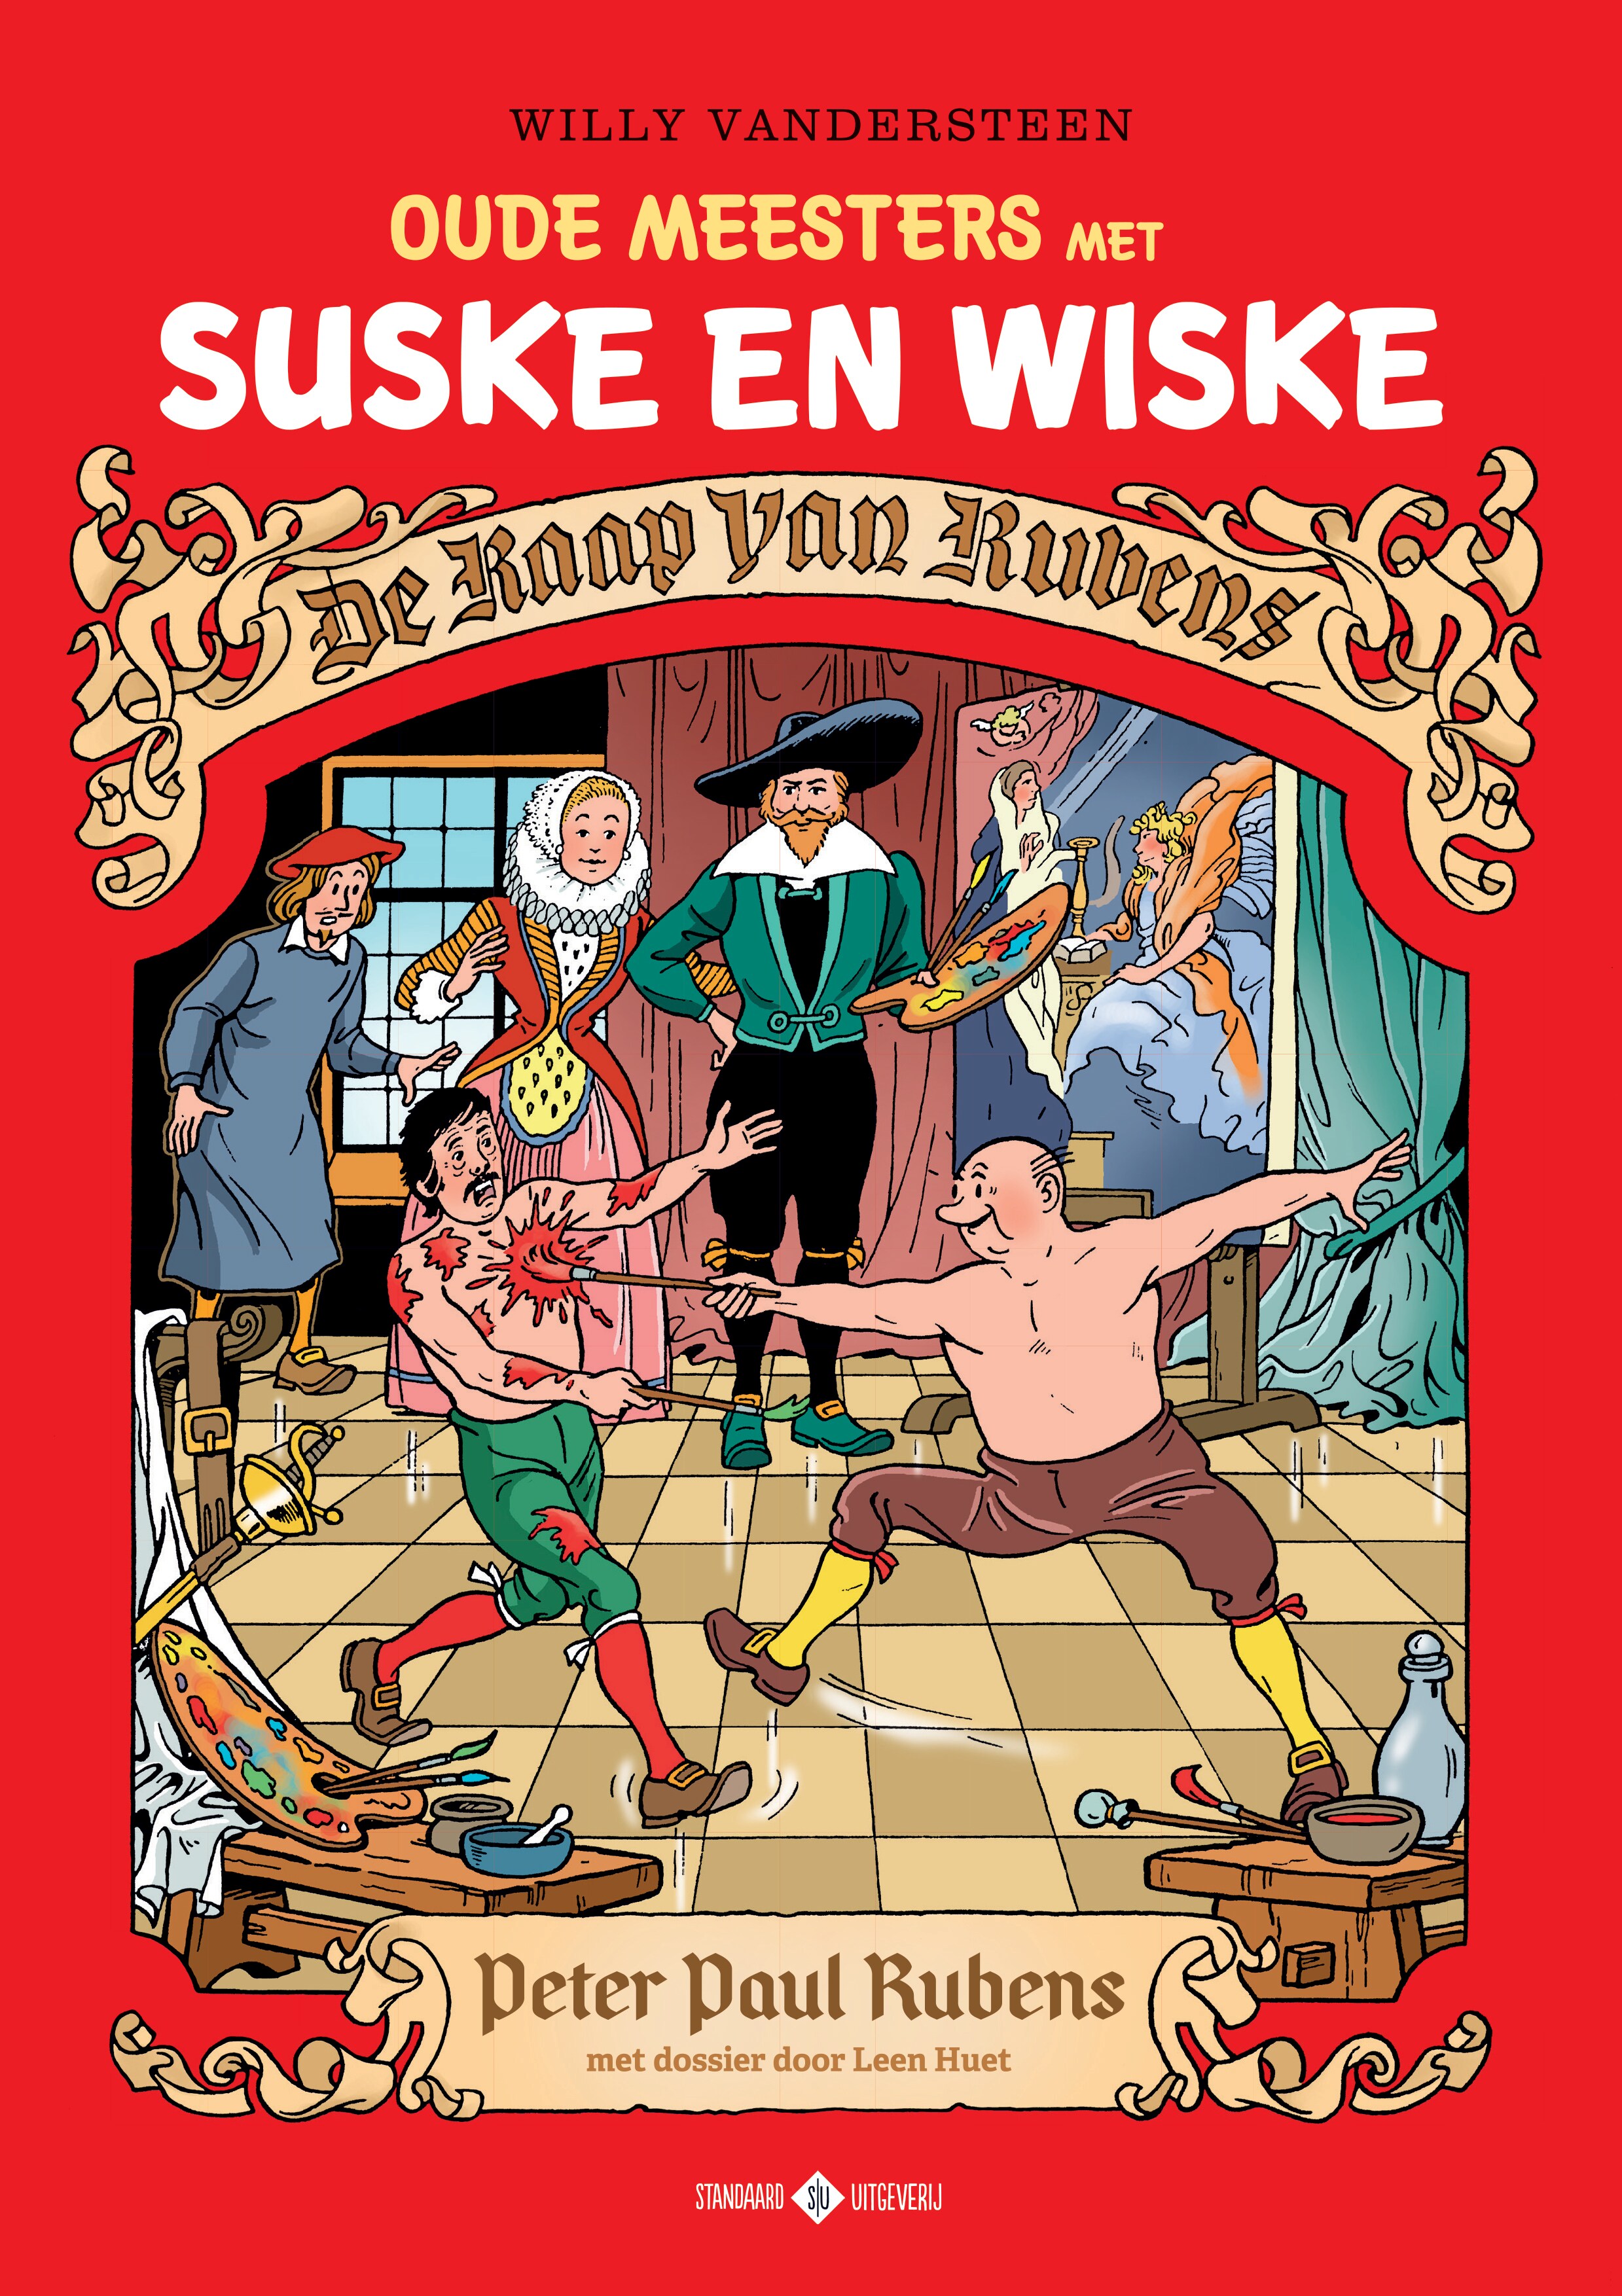 Suske en Wiske: De raap van Rubens ★☆☆☆☆